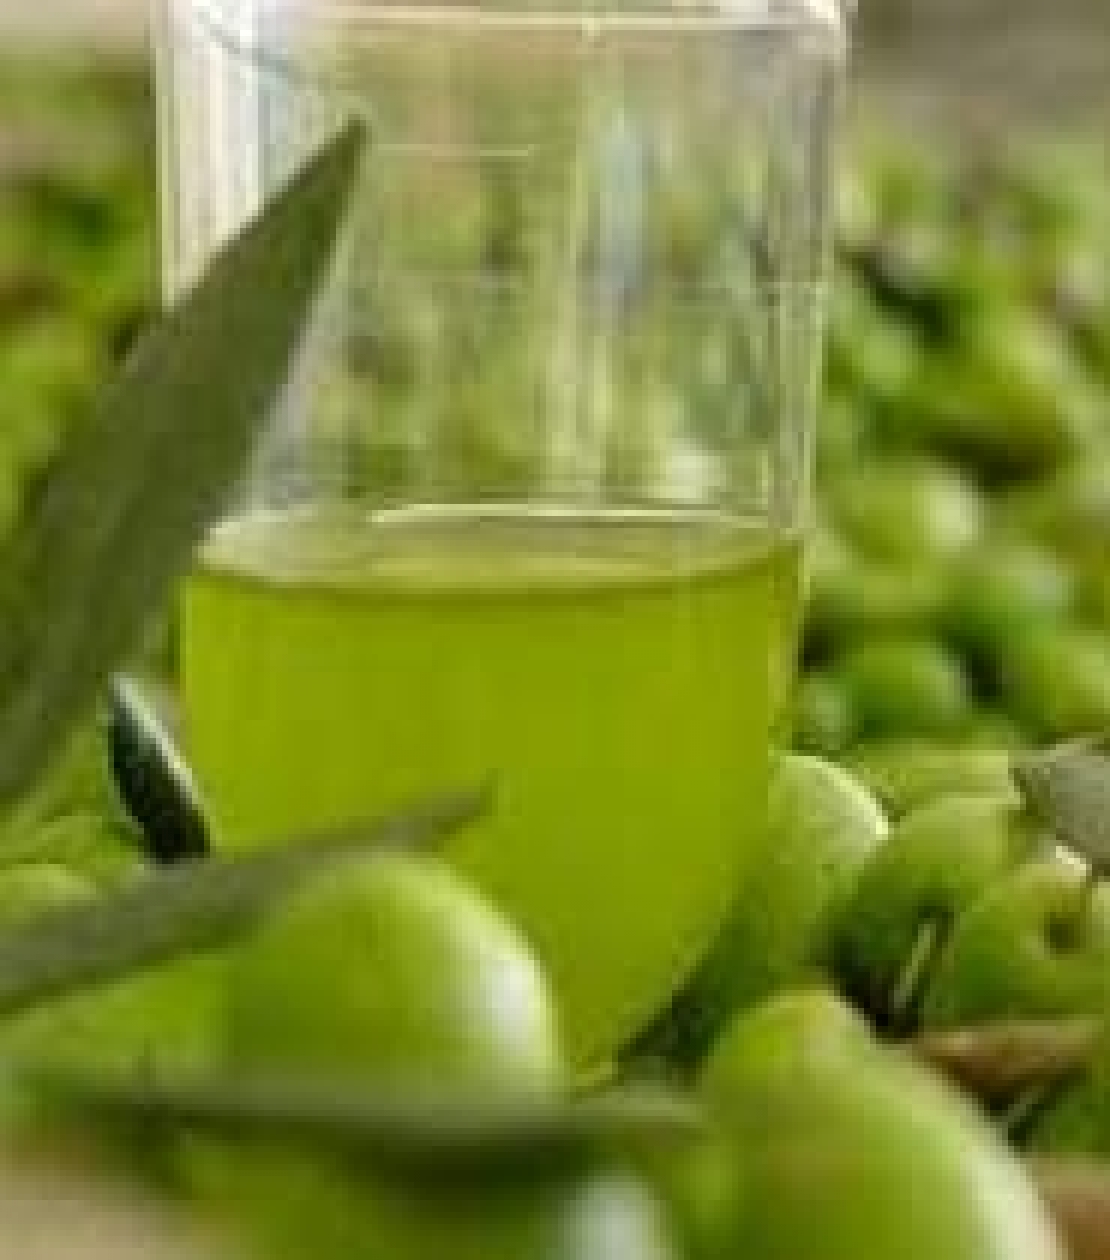 Troppo lunghe le analisi di laboratorio per l'olio d'oliva. Via libera a strumenti portatili?